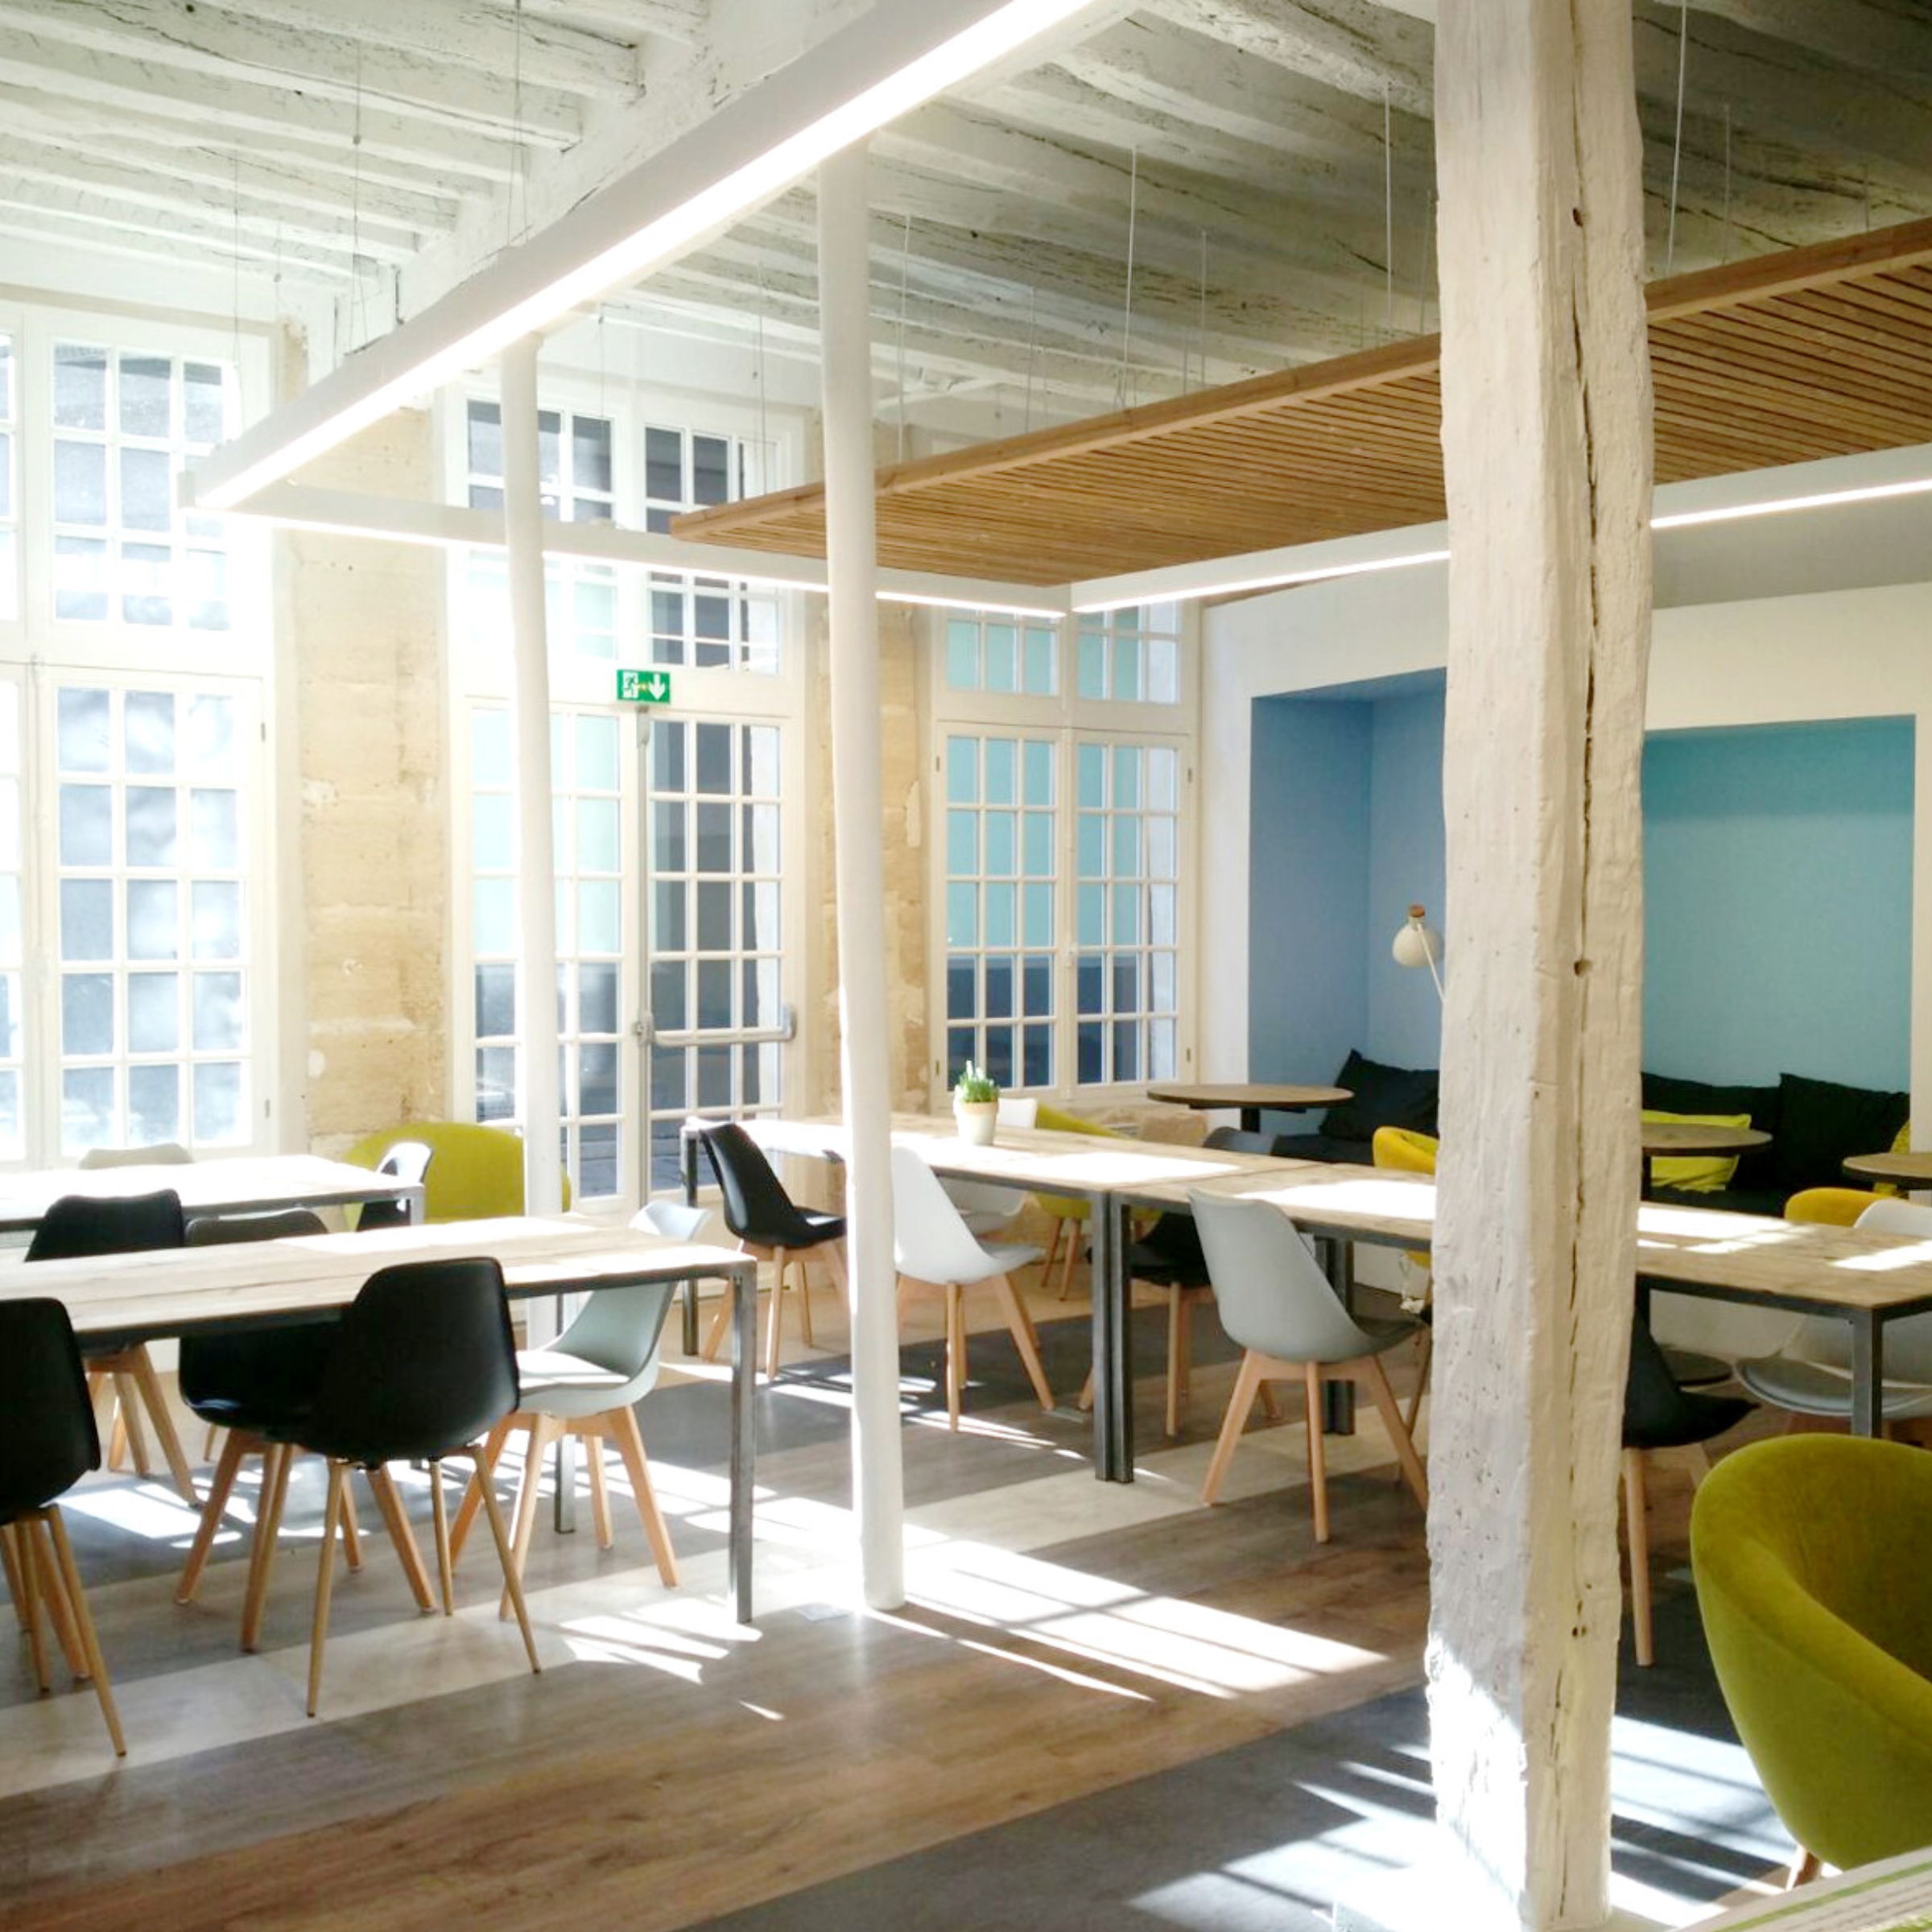 Pour votre plaisir on a choisi #clipper : super thés et tisanes bio !  #mycowork #coworking #montorgueil #paris